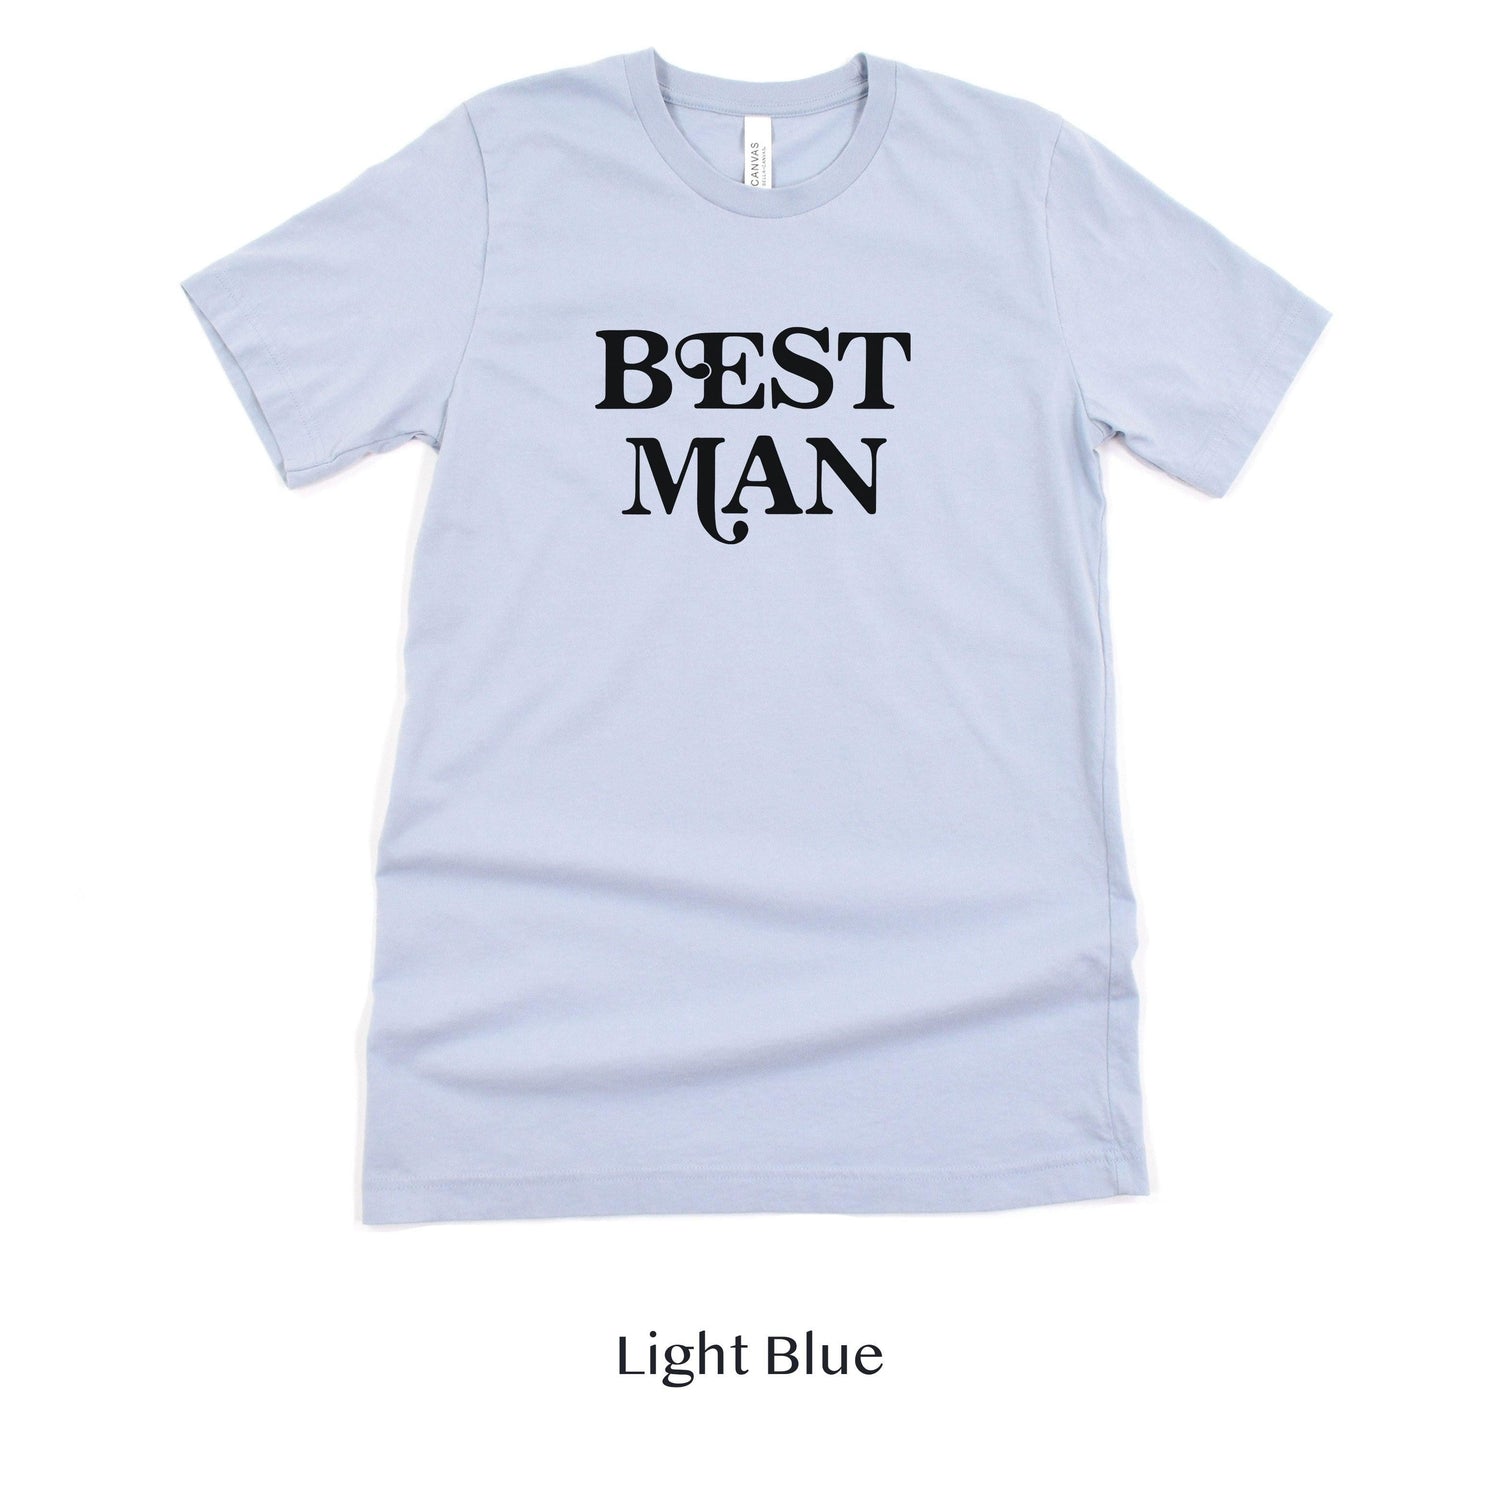 Best Man Retro Short-sleeve Tee by Oaklynn Lane - Light Blue Shirt